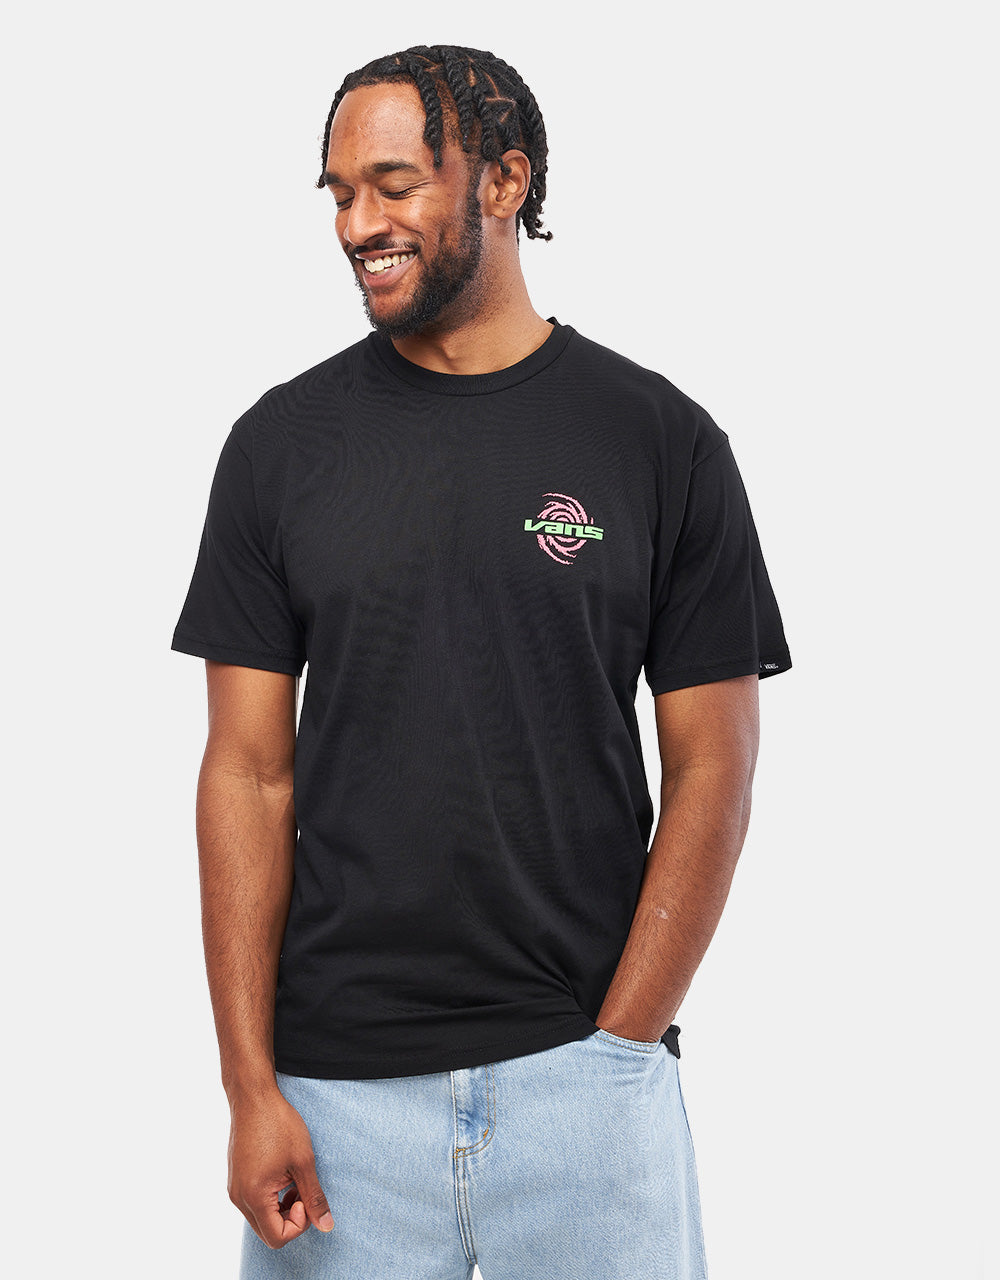 Vans Wormhole Warped T-Shirt - Black